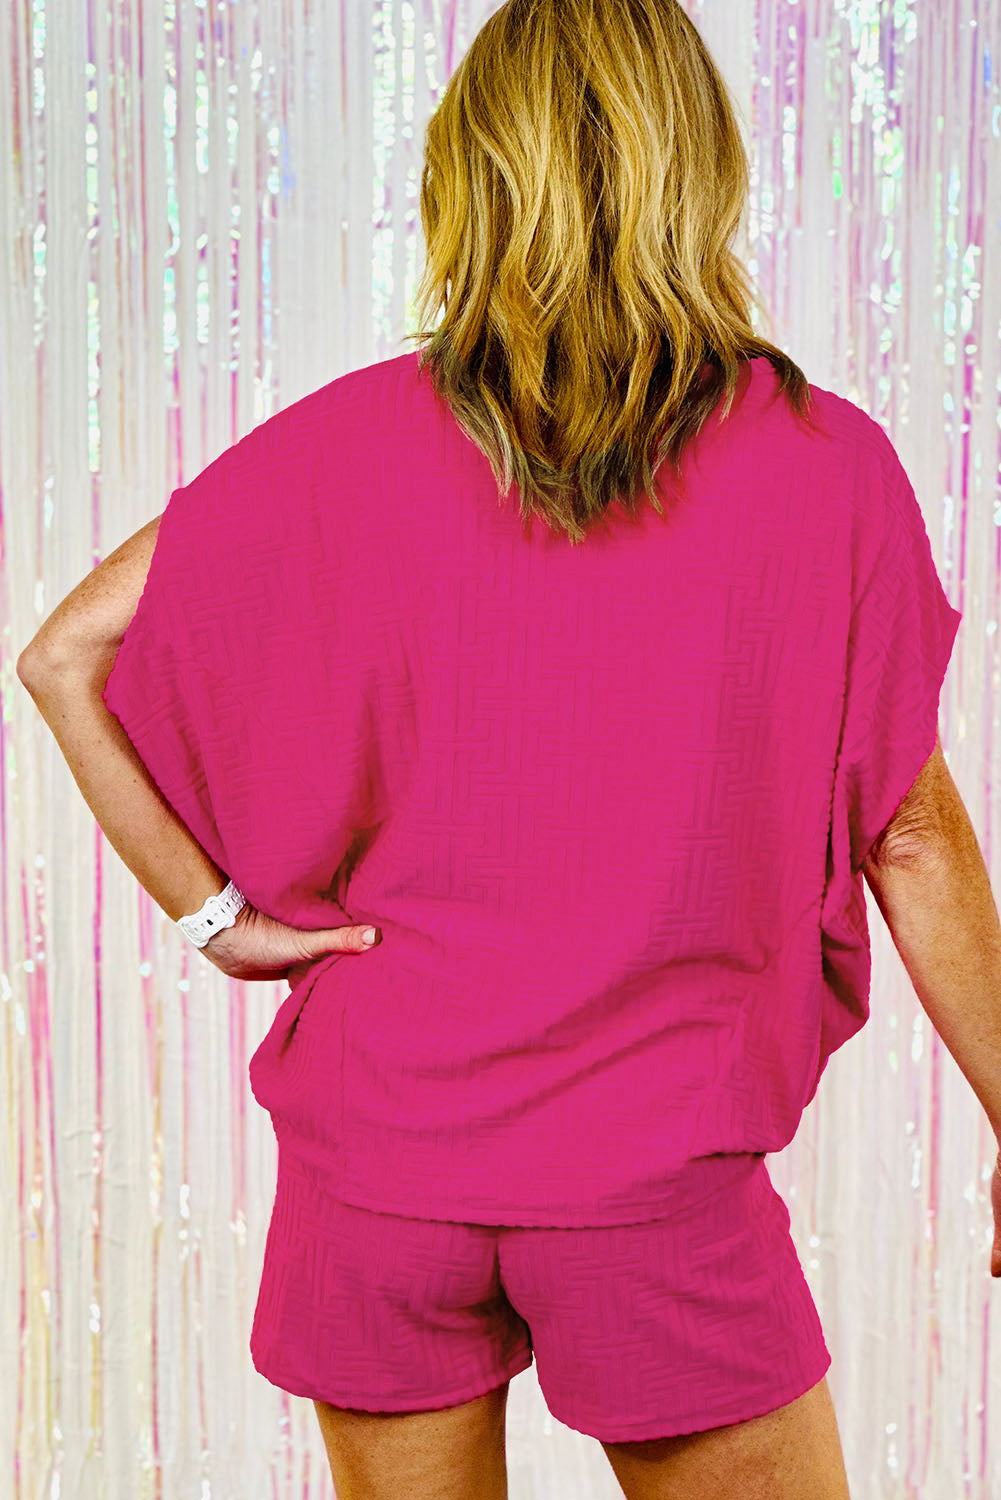 Rožnato rdeča teksturirana majica z dolgimi rokavi in ​​kratke hlače za večjo velikost